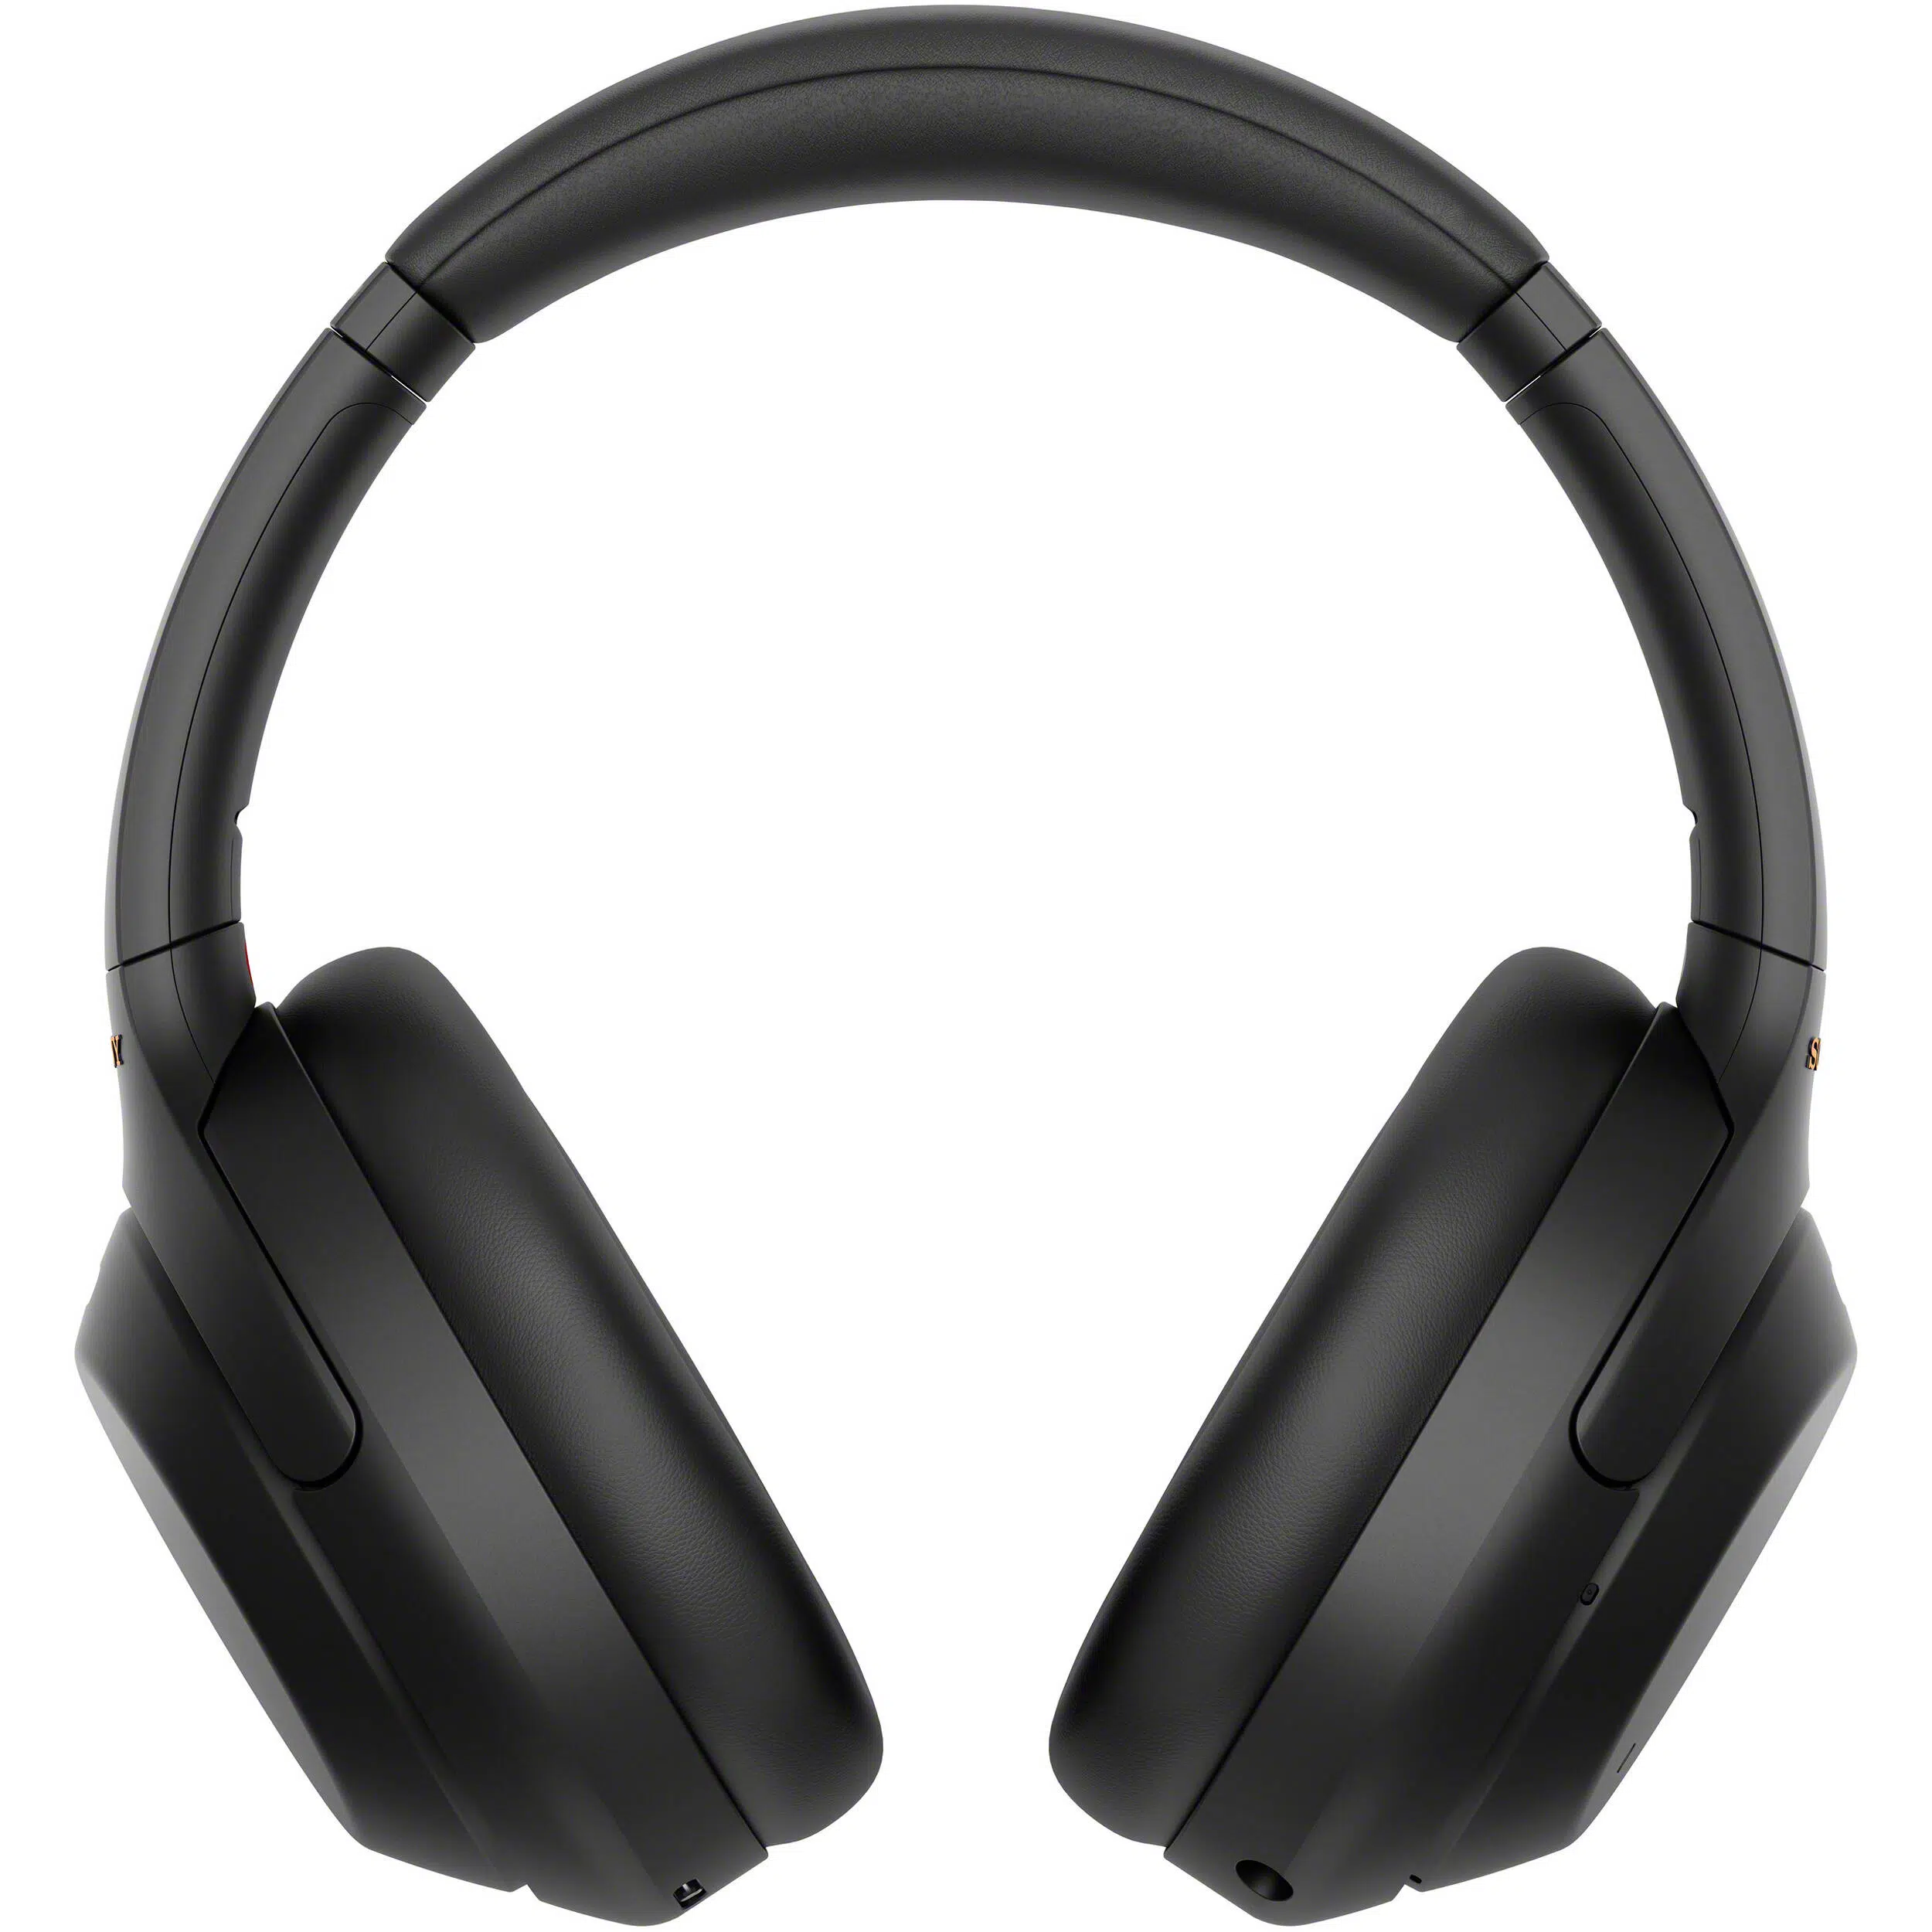 Tai nghe không dây chống ồn Sony WH-1000XM4 (Black) Chính hãng, Giá tốt